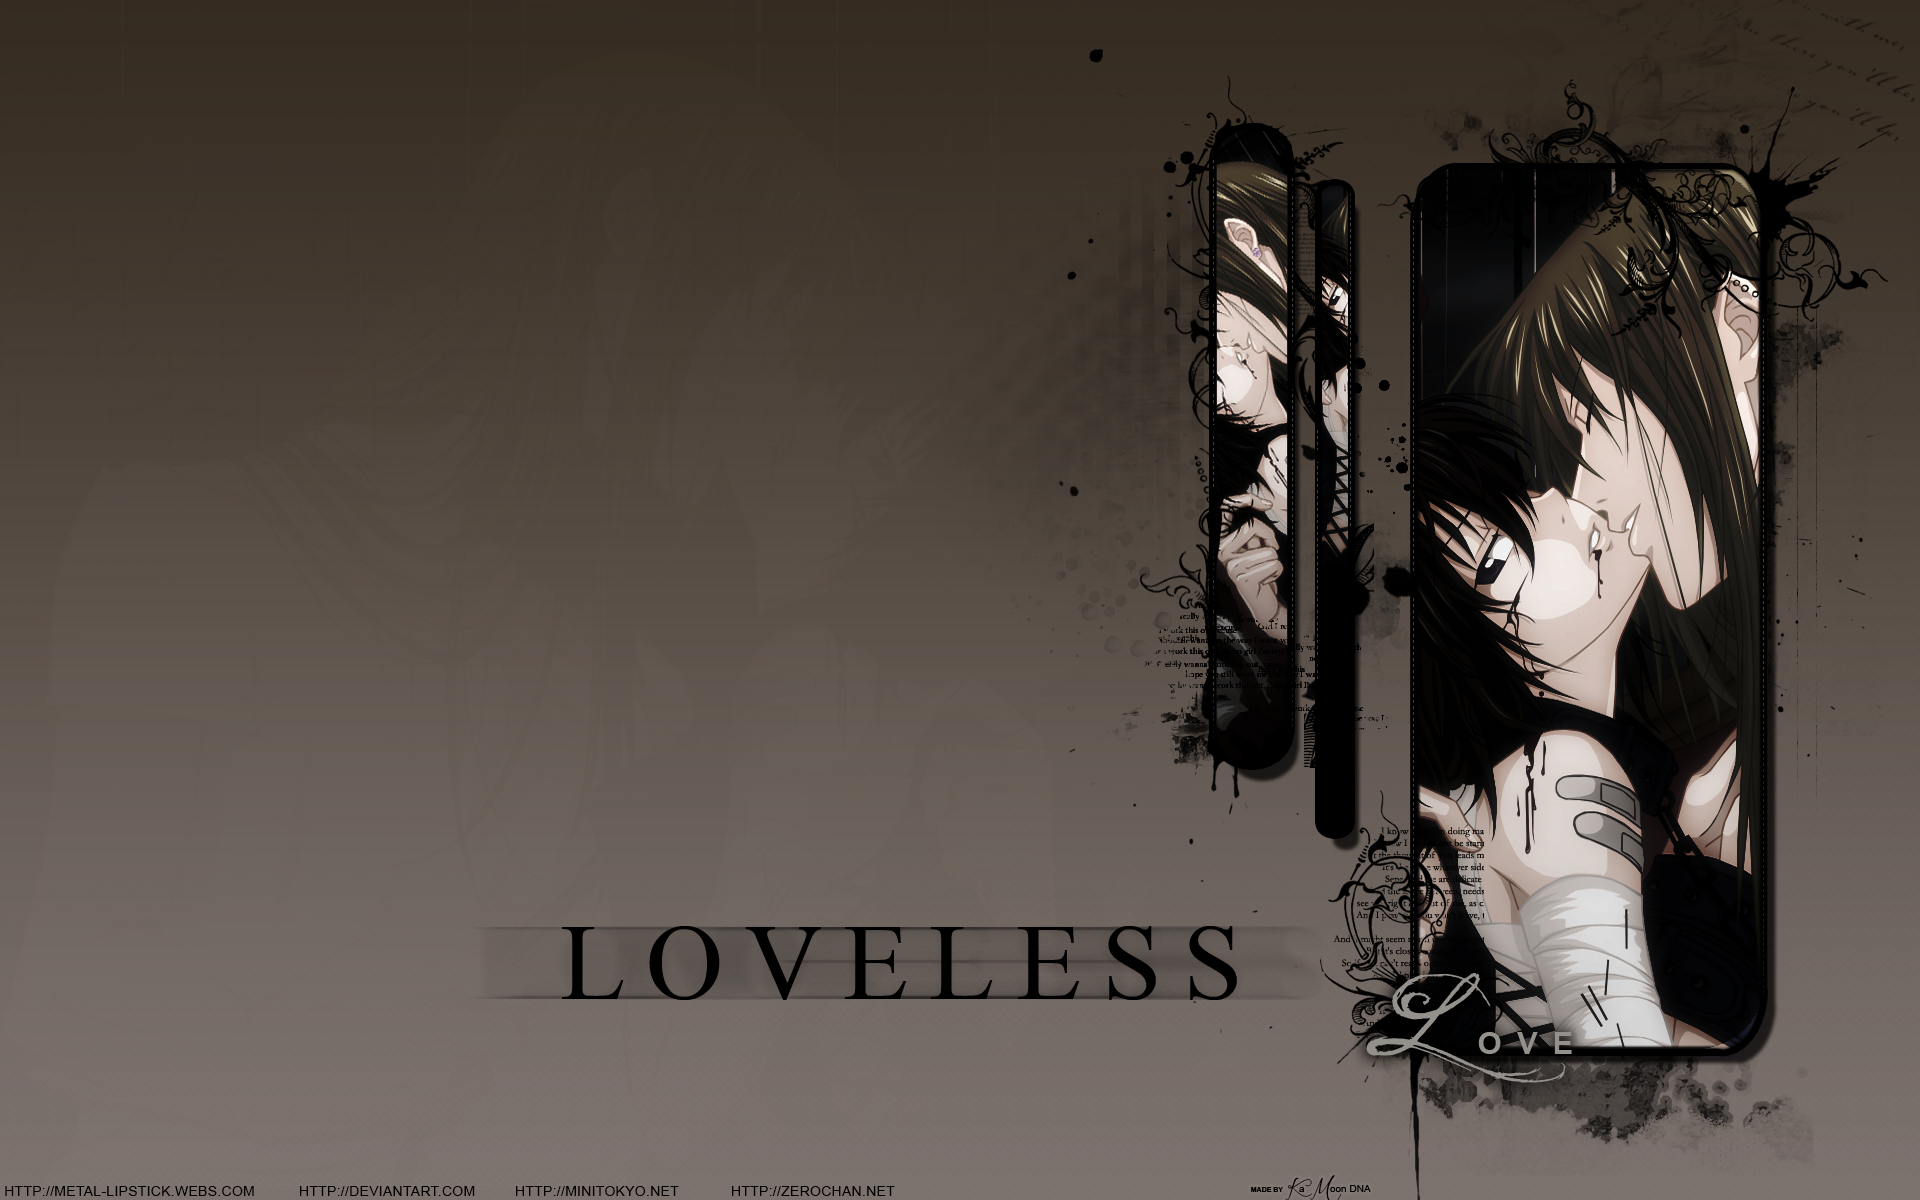 Loveless Wallpaper. Loveless Wallpaper, Loveless Background Butterflies and Patty Loveless Wallpaper